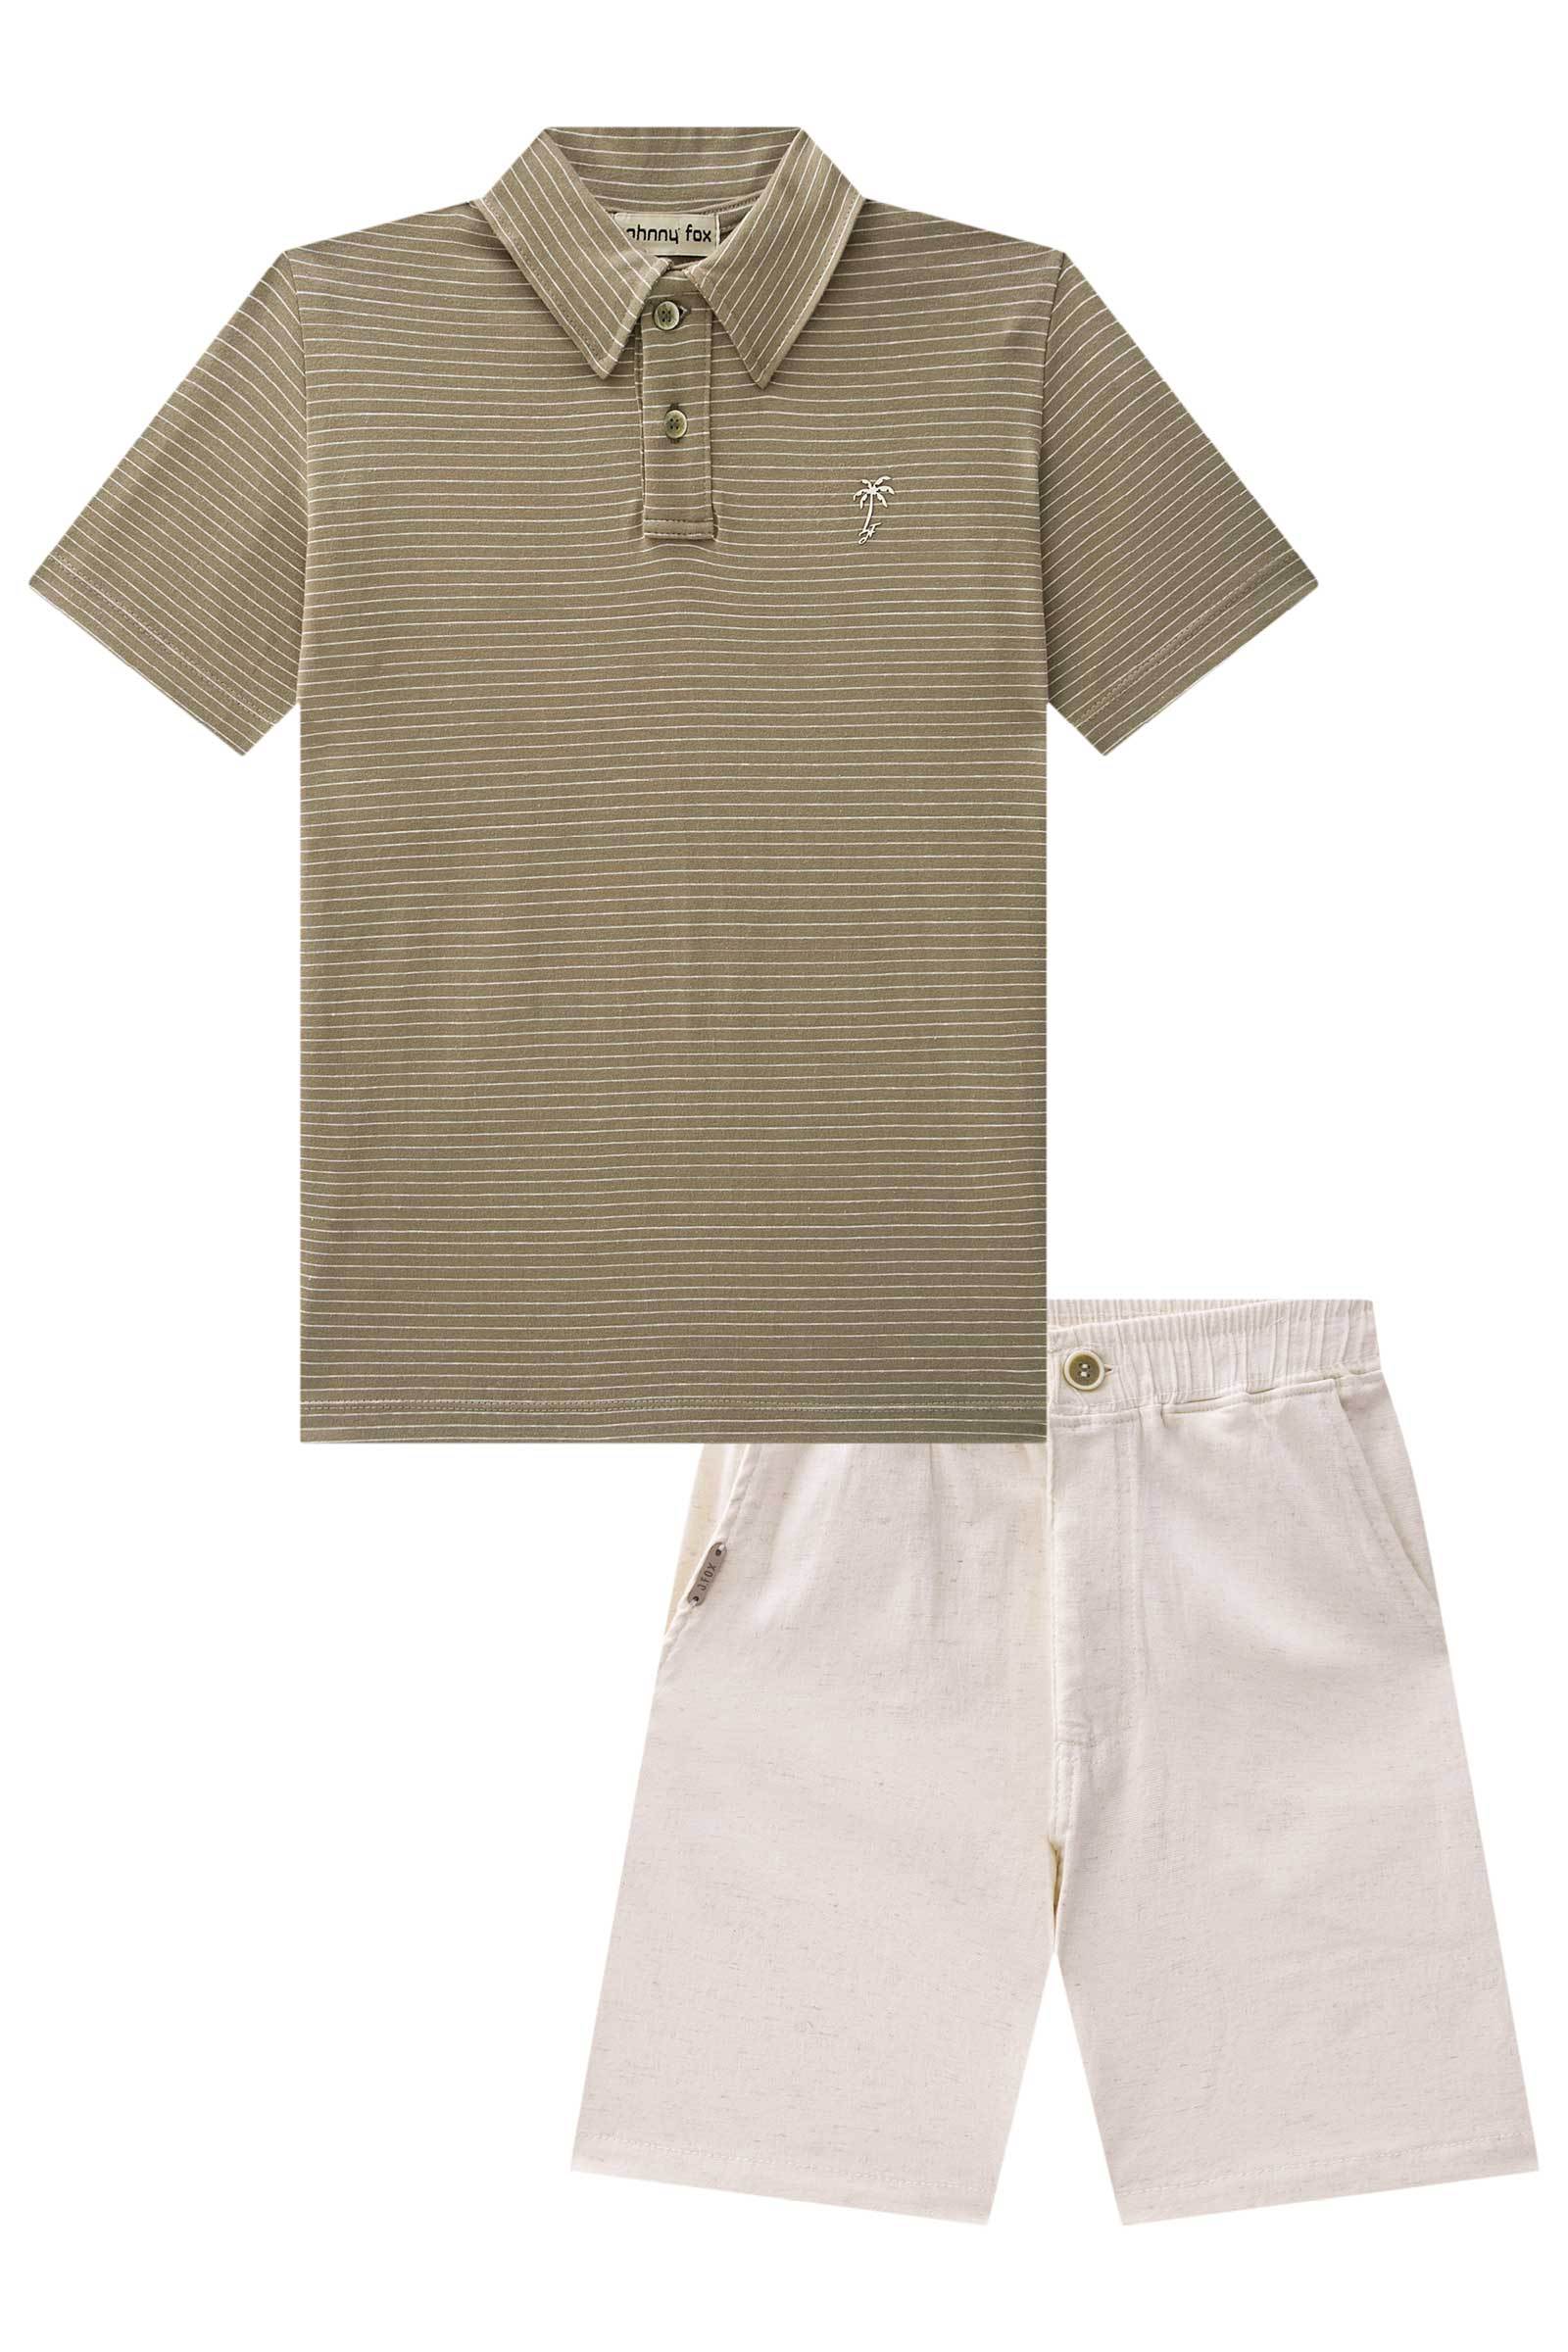 Conjunto de Camisa Polo em Cotton Listrado Fio Tinto e Bermuda em Linho Panamá com Elastano 75789 Johnny Fox